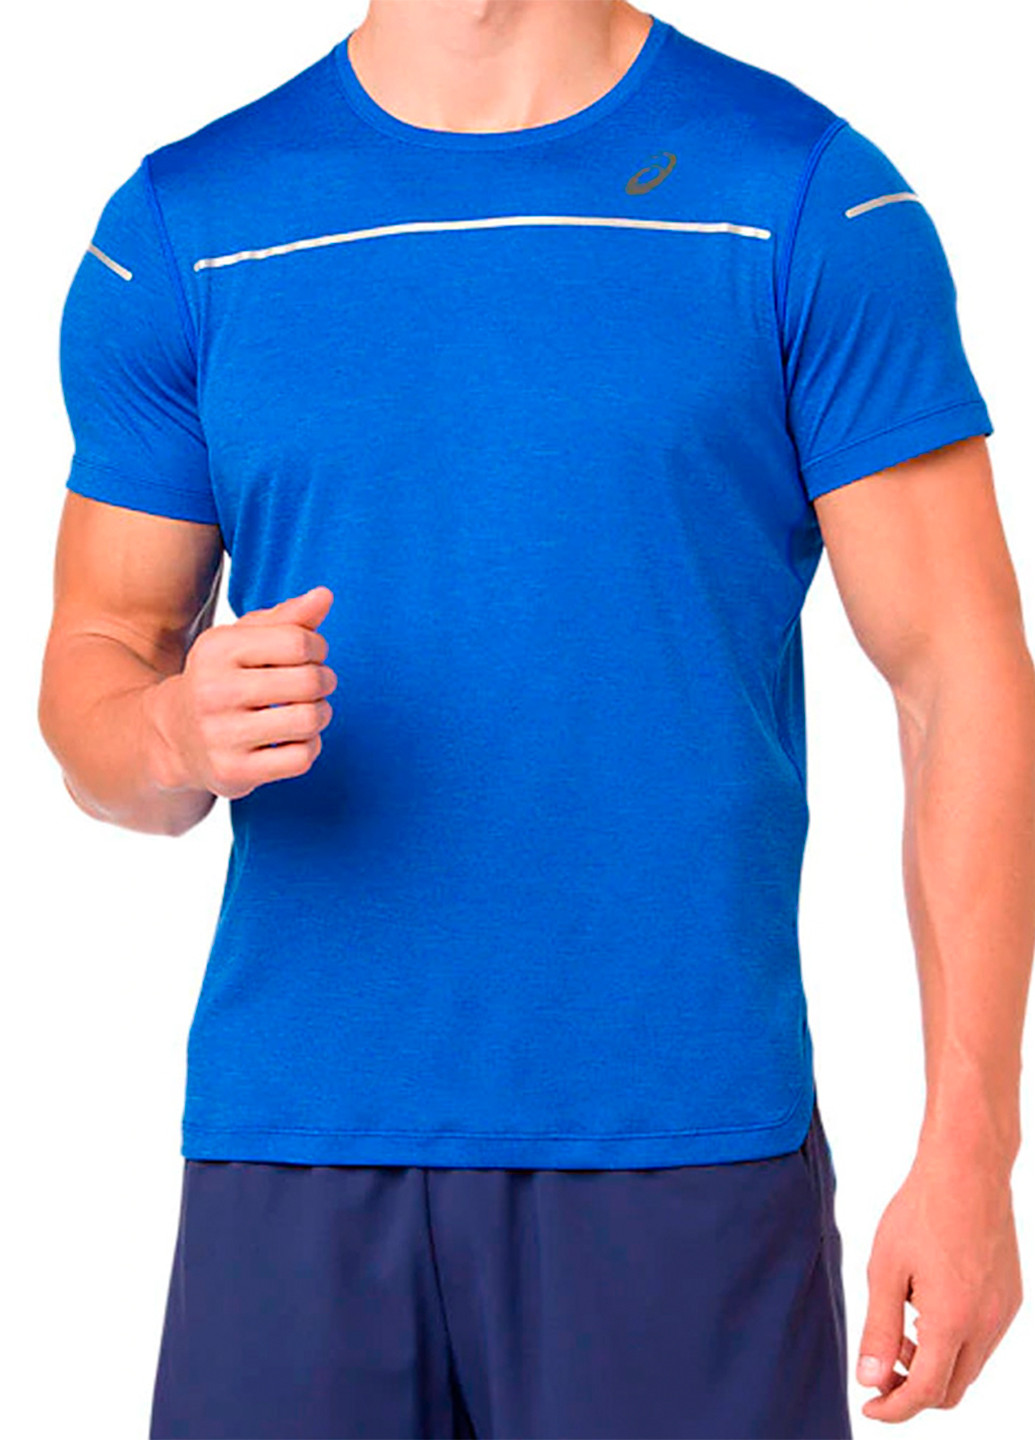 Синяя мужская футболка Asics Lite-Show